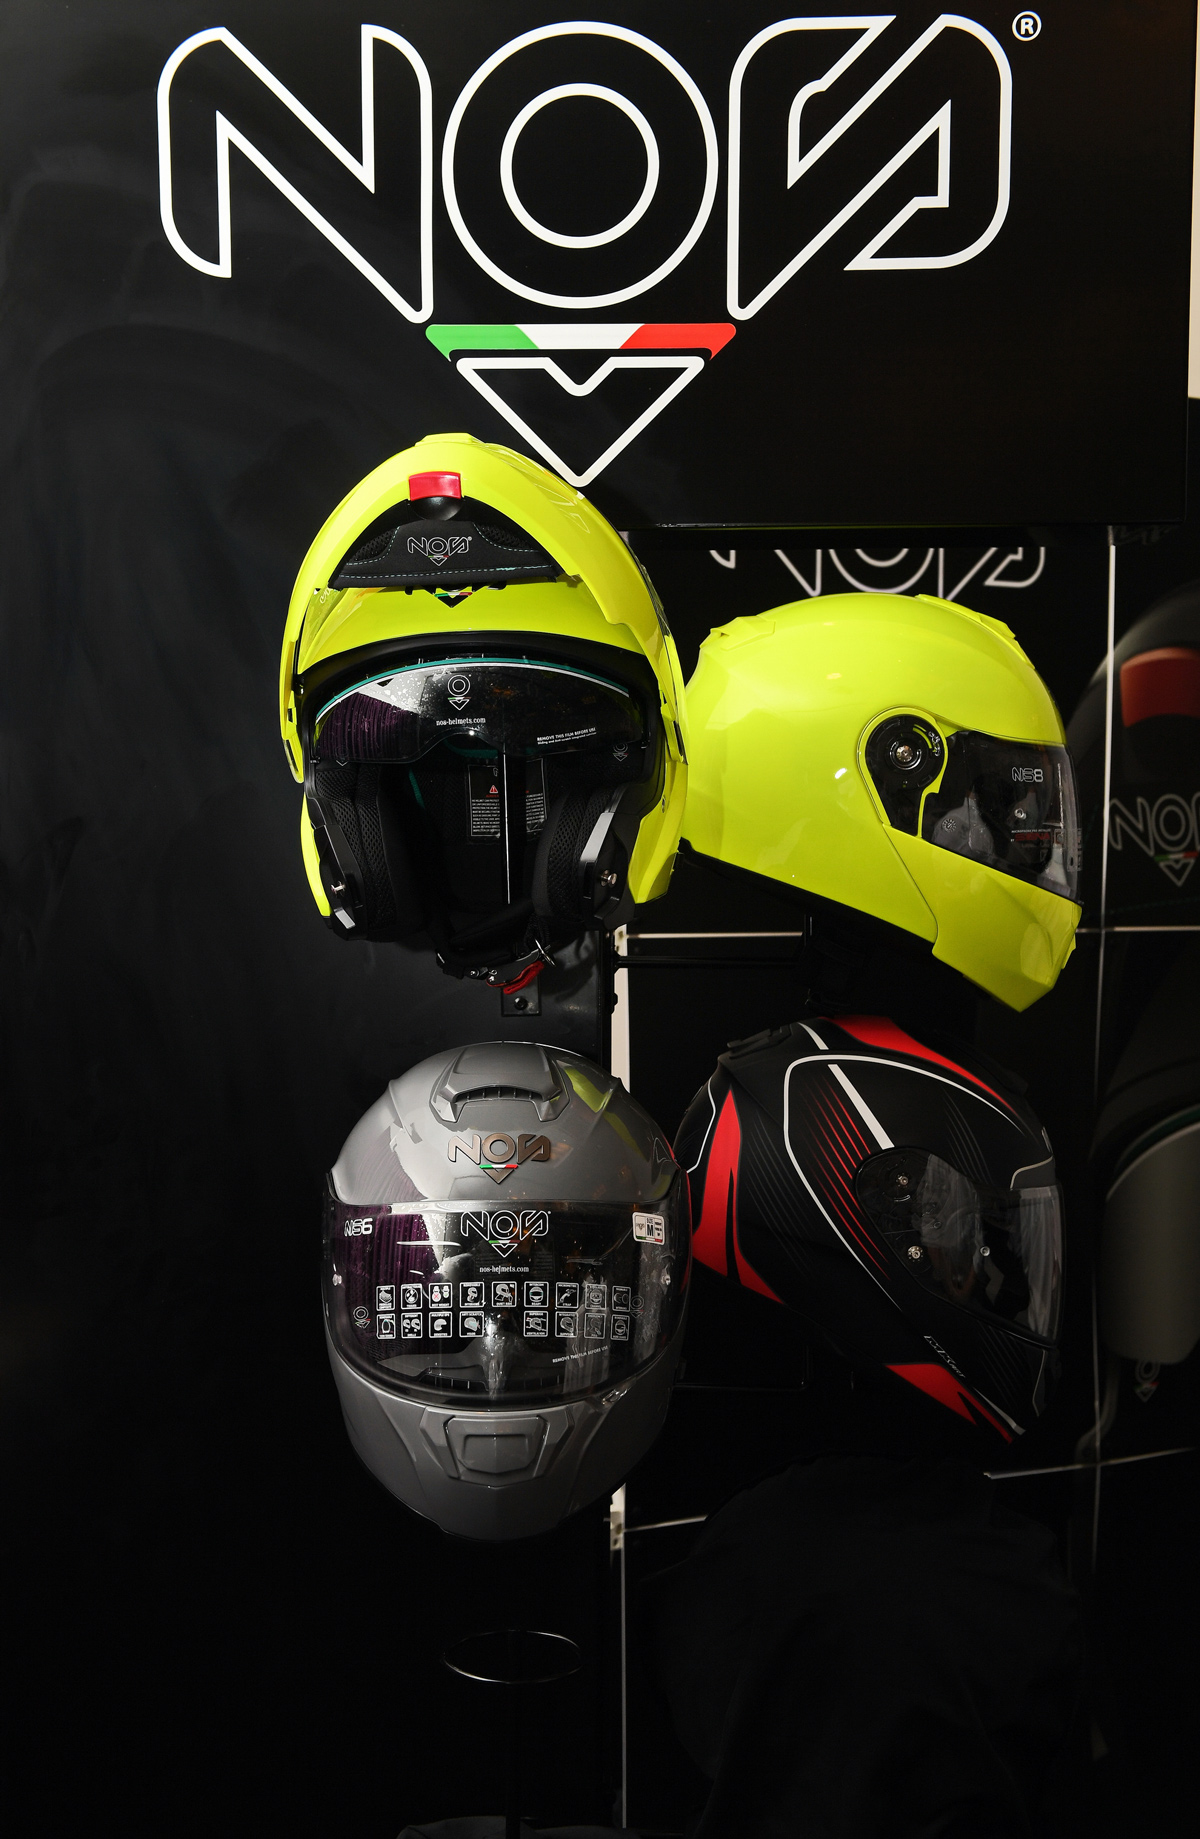 ber-racing-nos-helmets